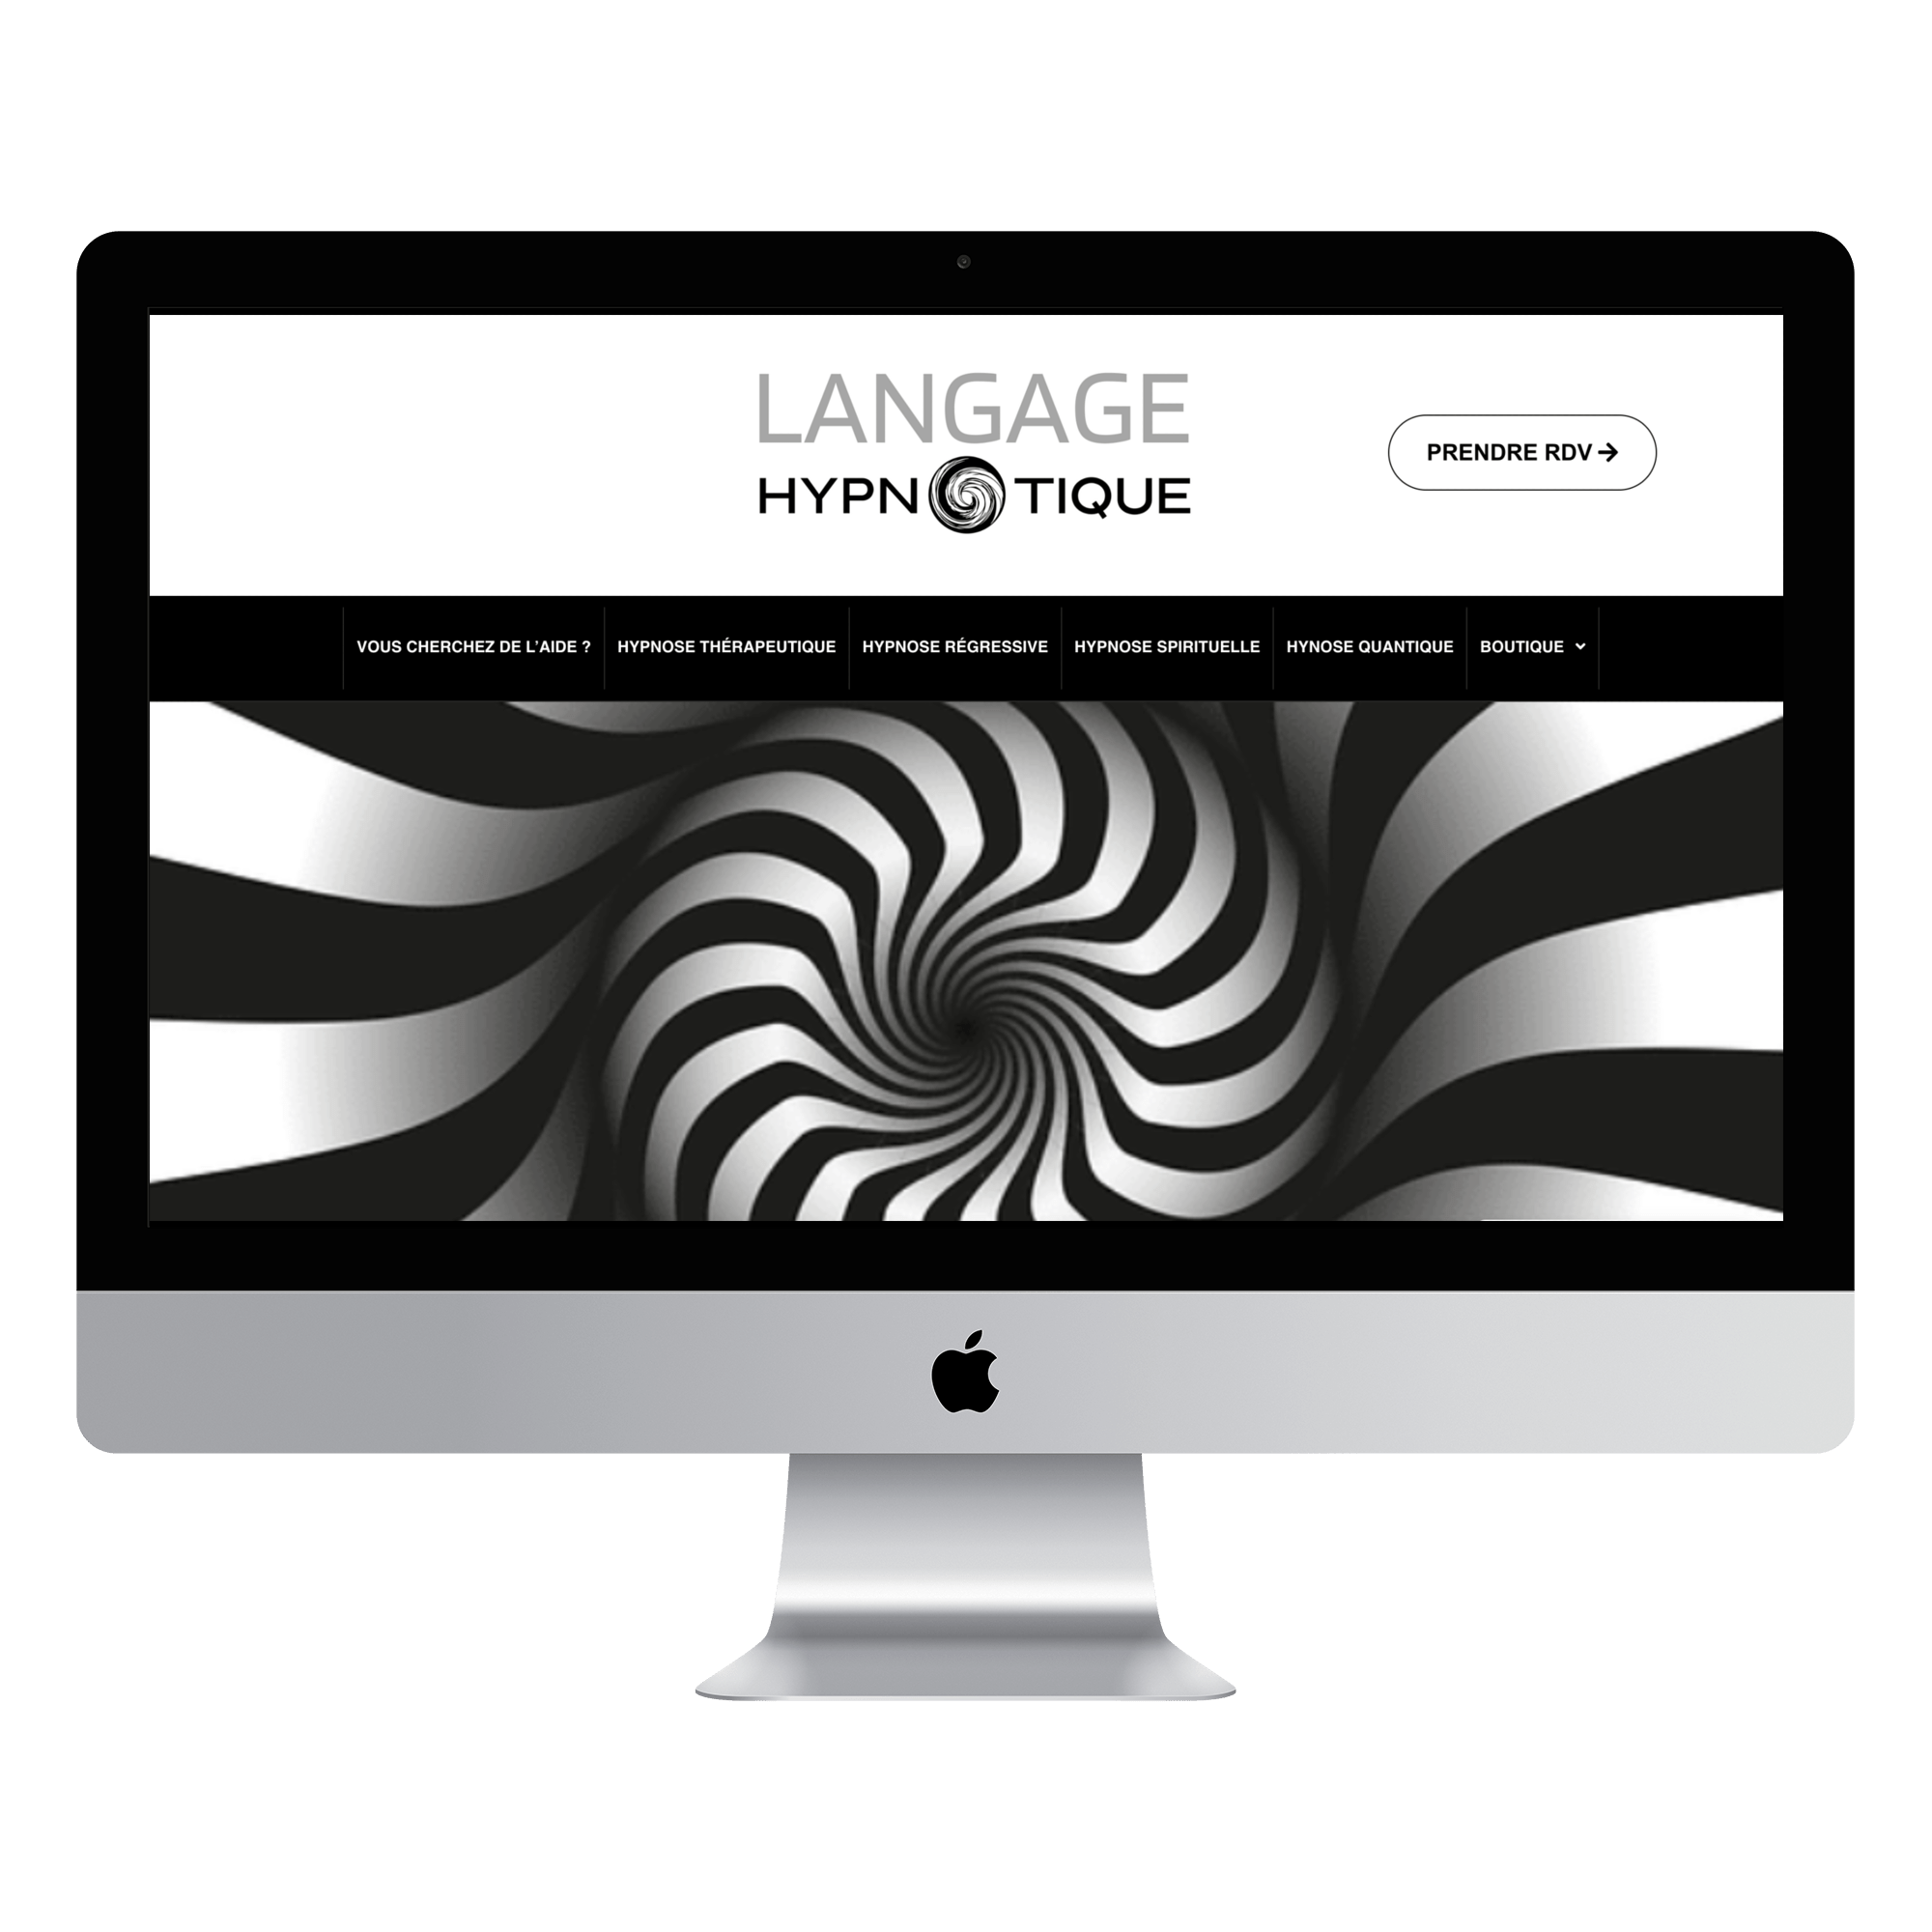 Language Hypnotique créer mon site internet professionnel landes agence web DAX